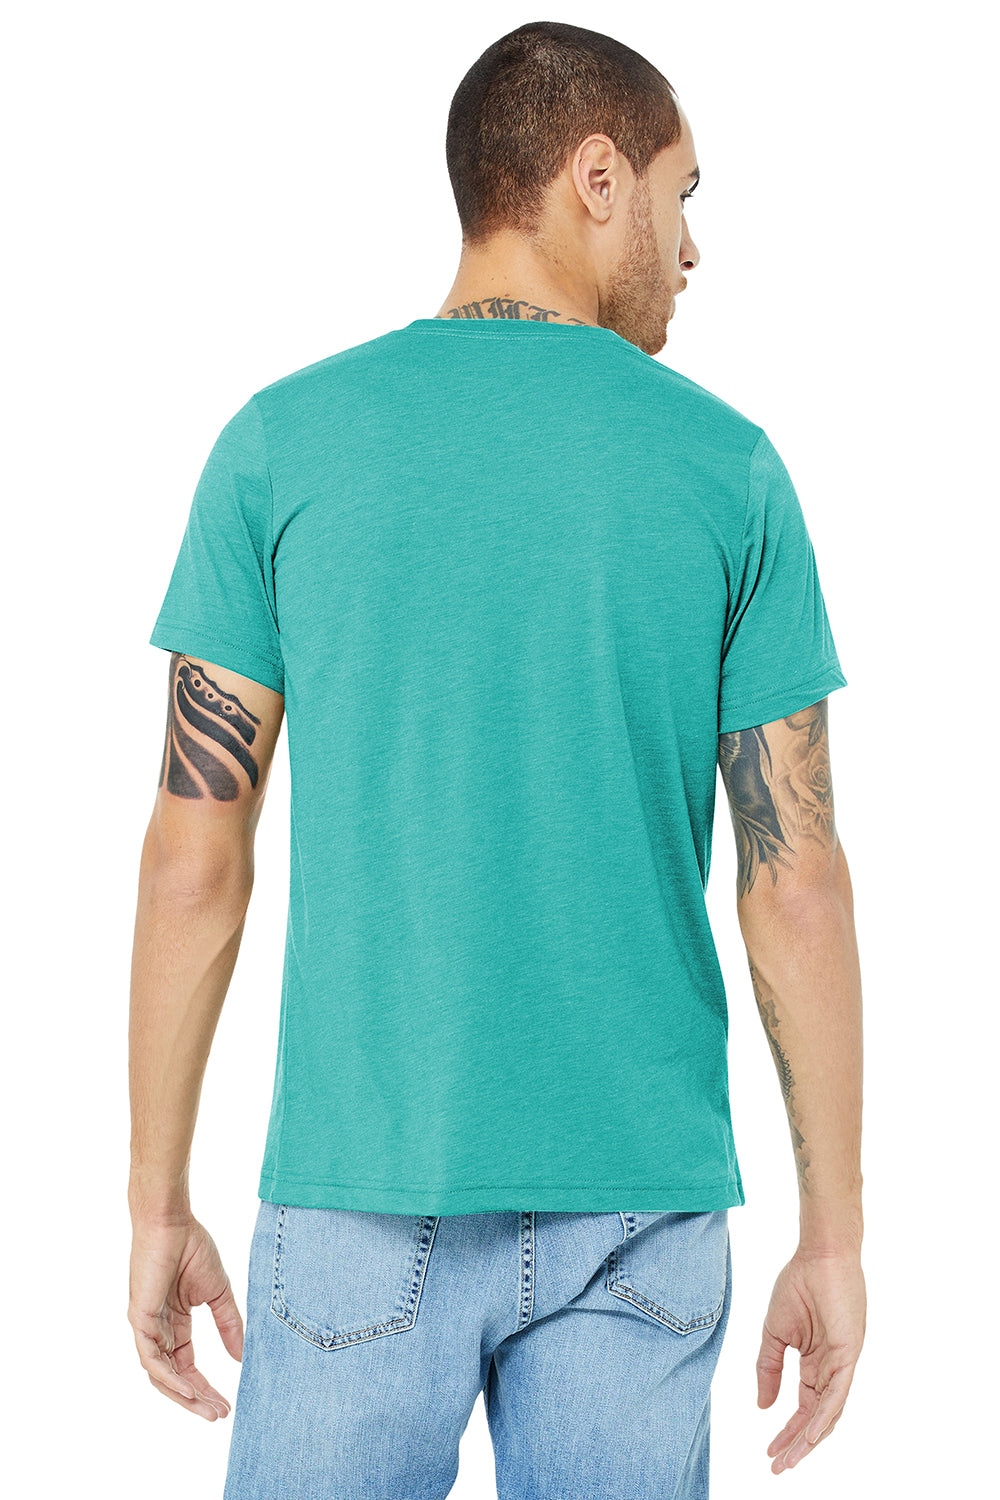 Bella + Canvas BC3413/3413C/3413 Mens Short Sleeve Crewneck T-Shirt Sea Green Model Back